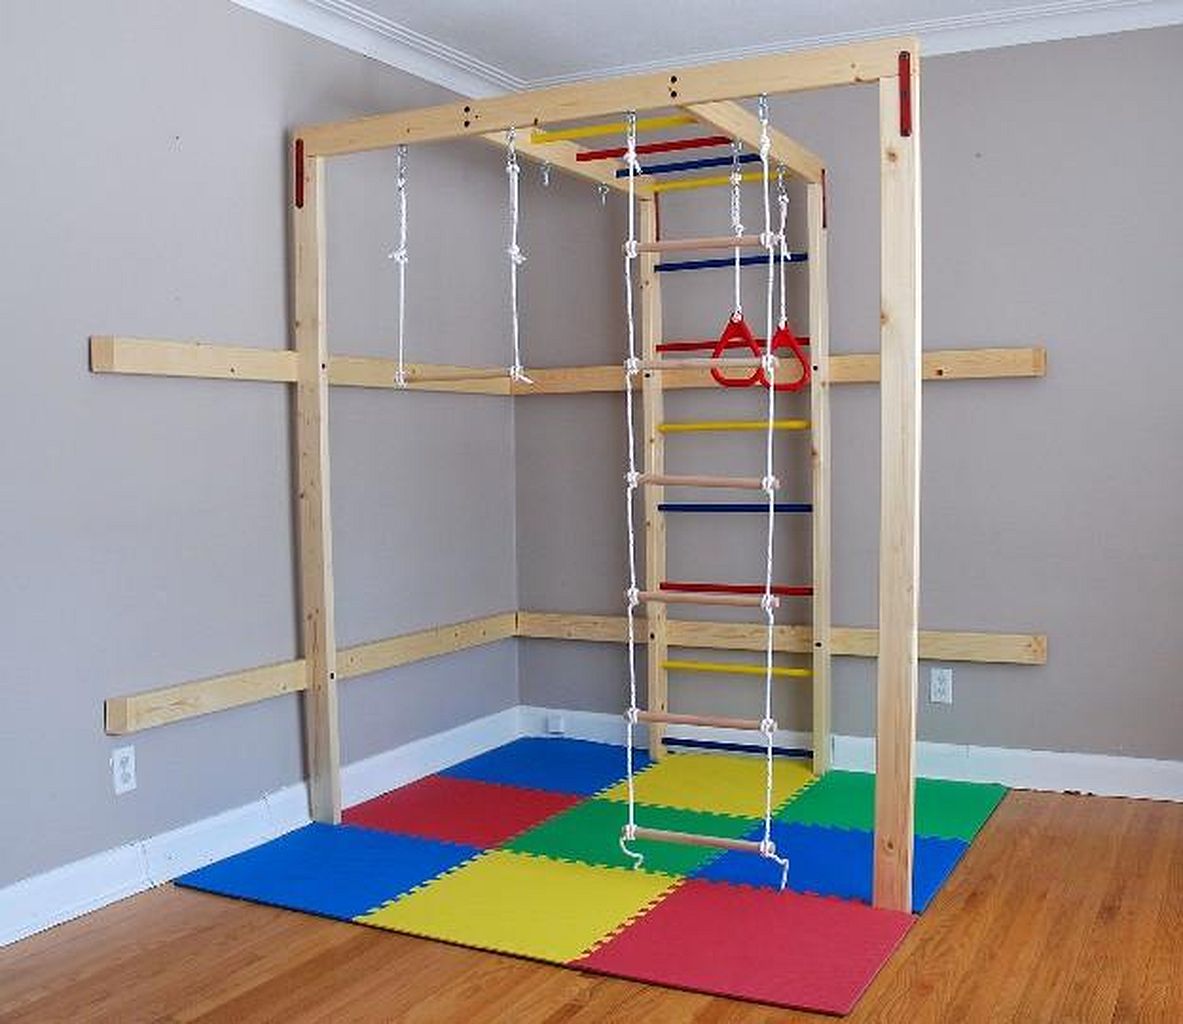 Спортивный уголок для детей в квартире: как правильно организовать пространство